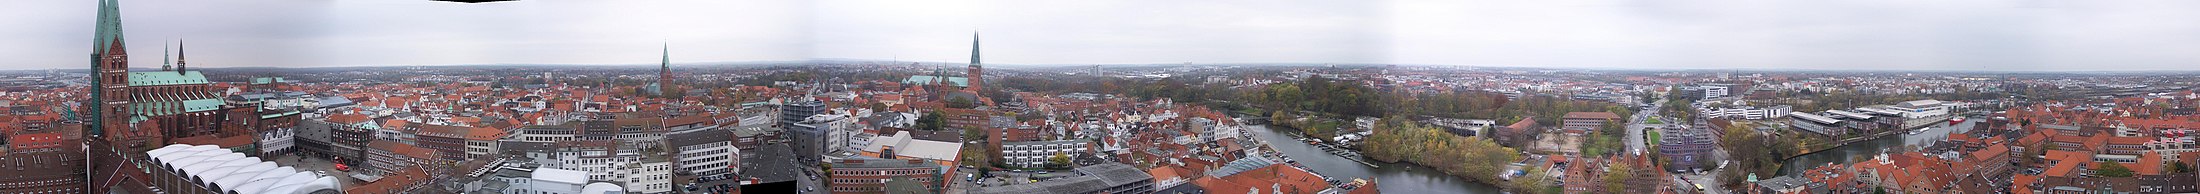 Lübeck hiriaren irudi panoramikoa.